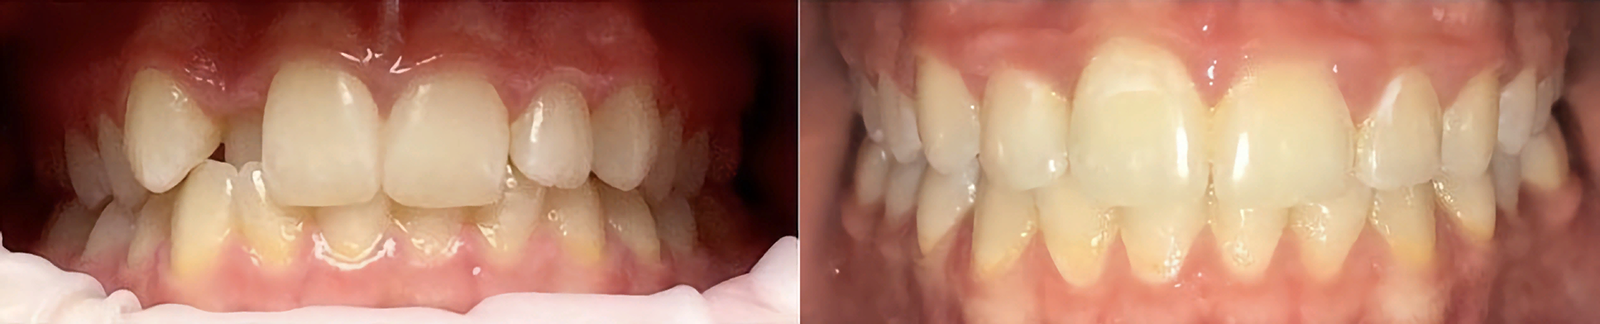 Лечение периостита Томск Корейский стоматология денталия томск на иркутском телефон